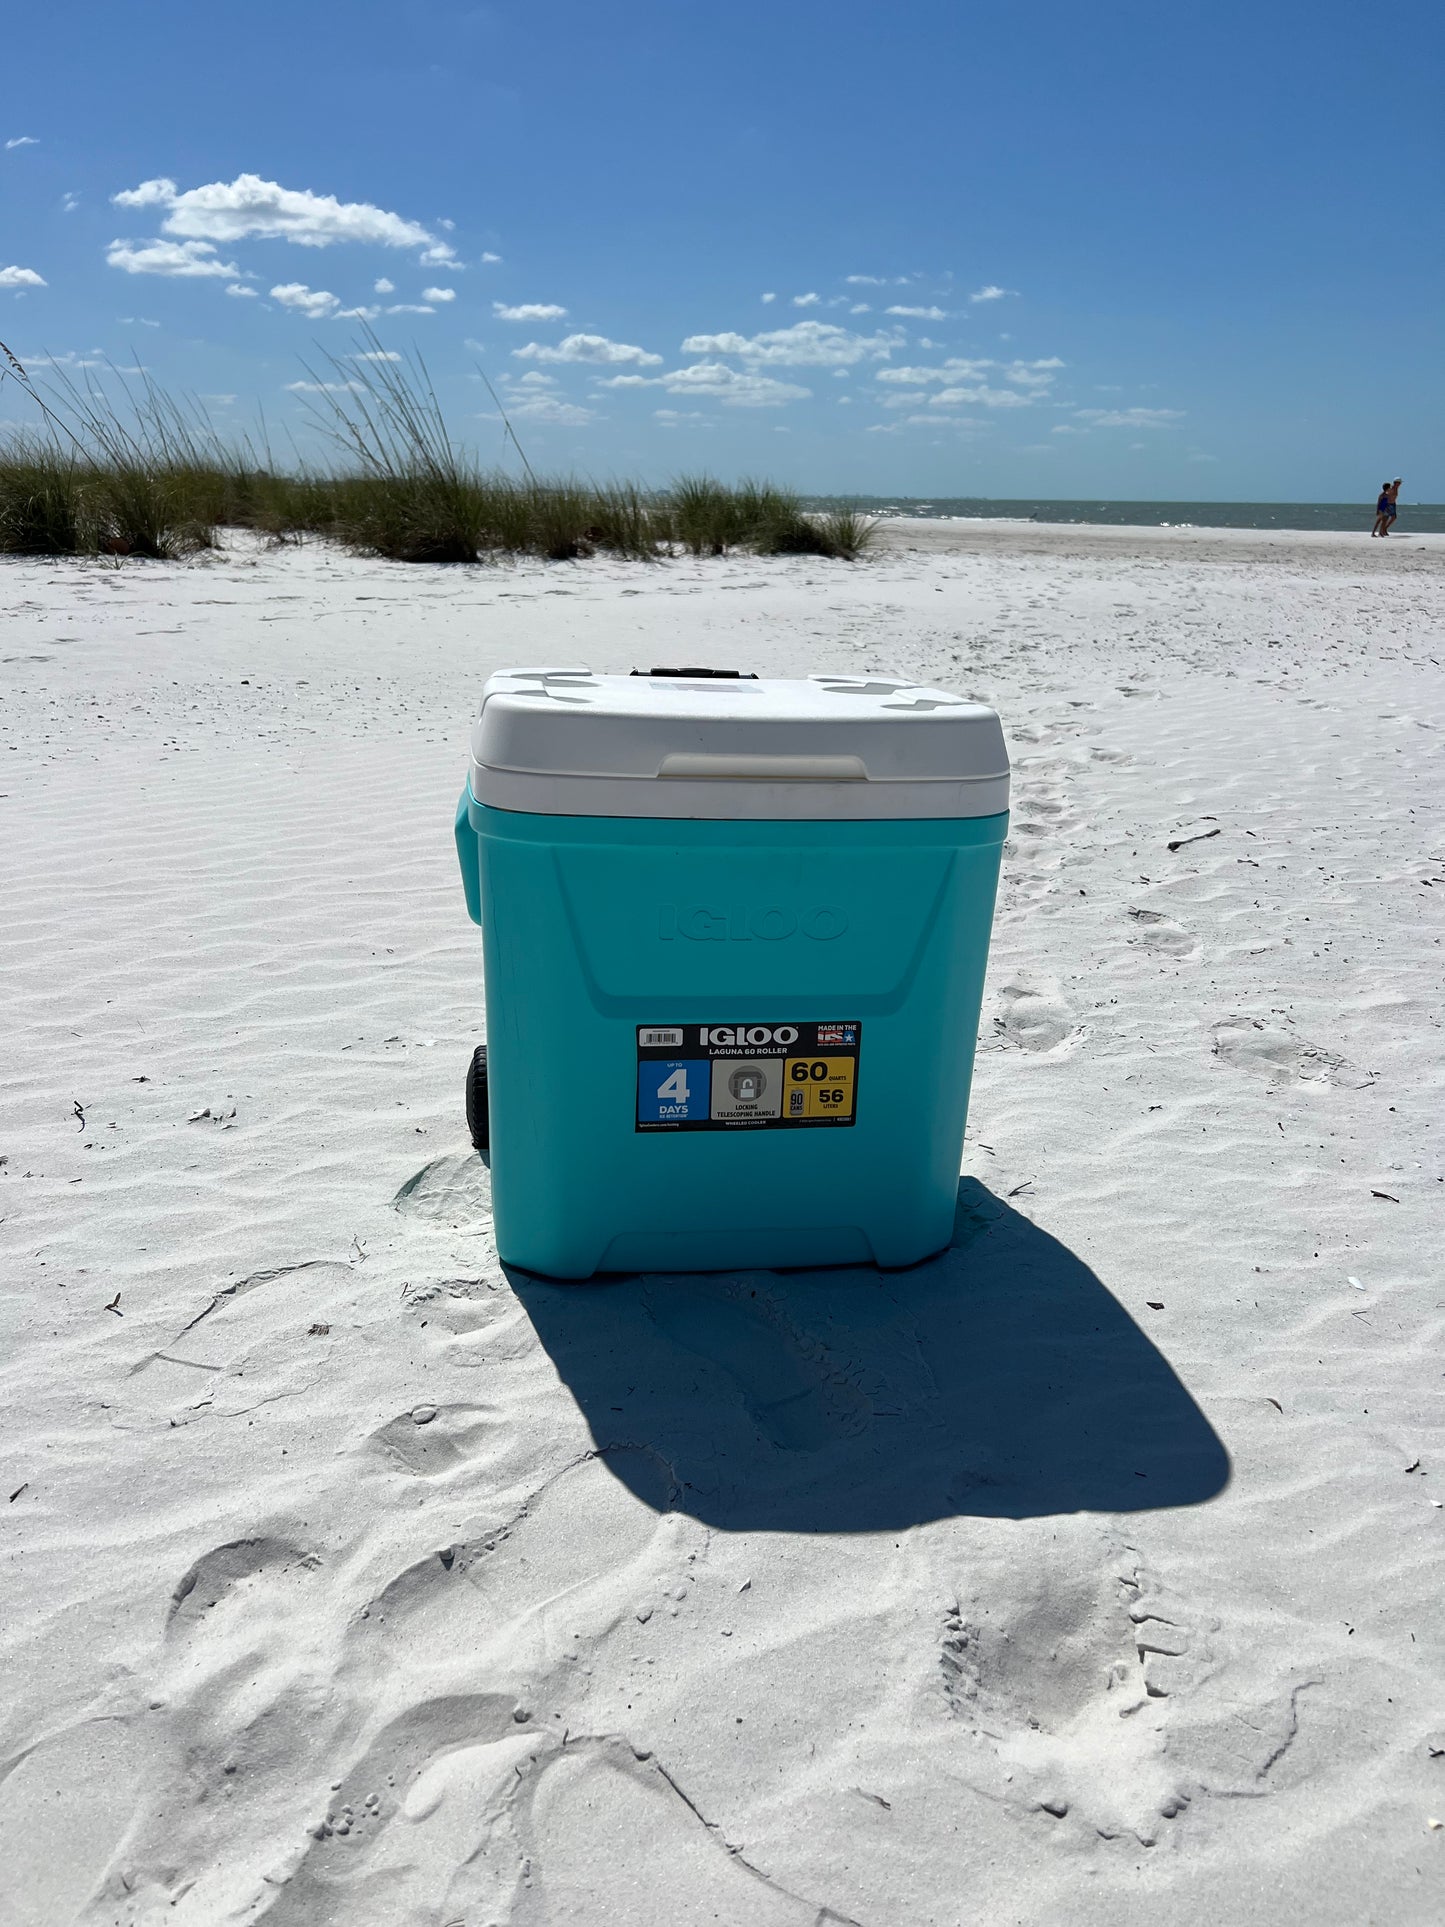 Beach Gear Large Cooler 60 quart